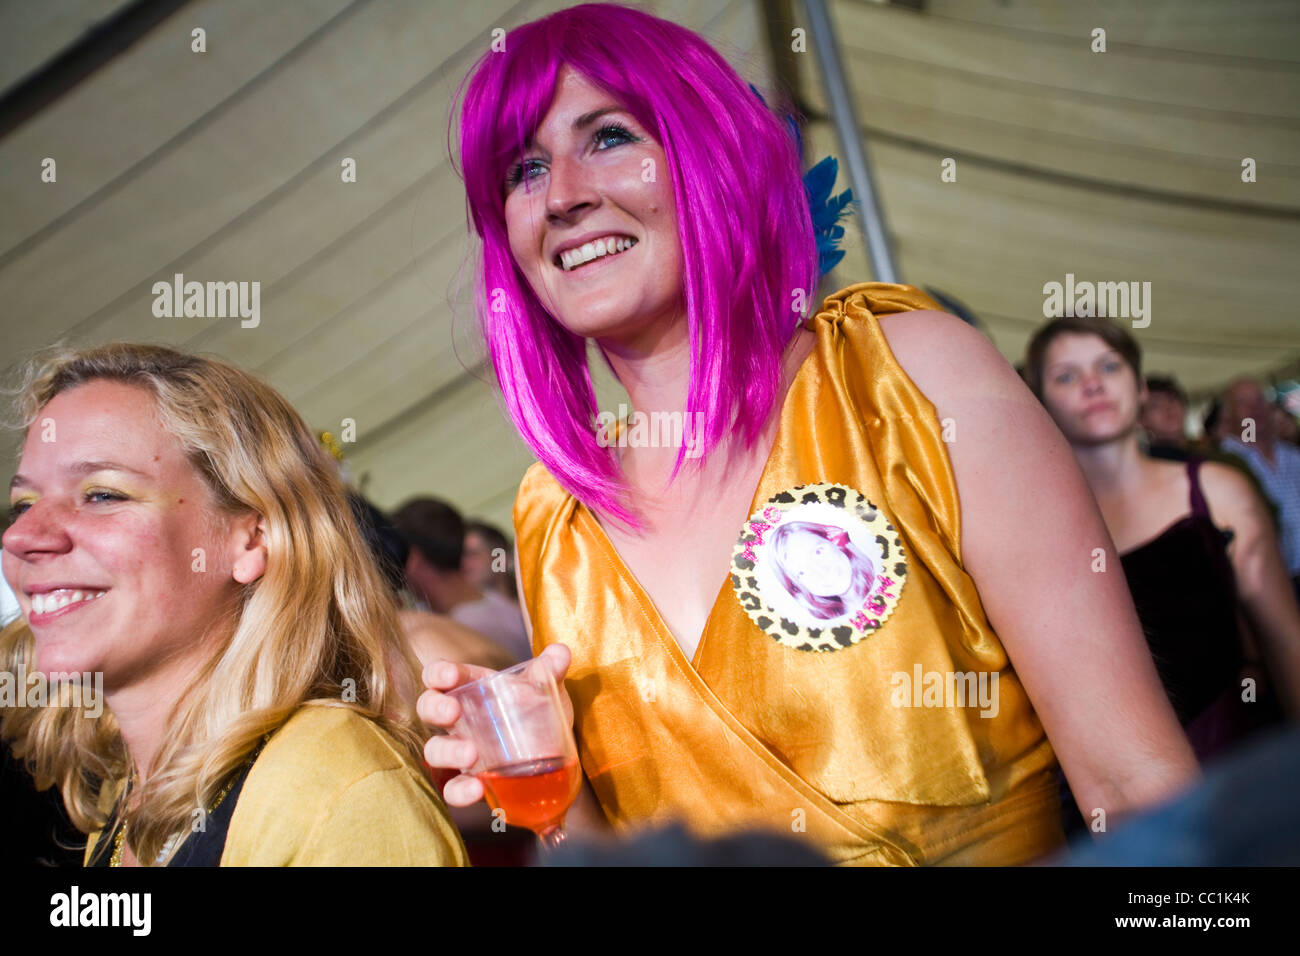 Una donna in una parrucca viola con un drink sorrisi come ella